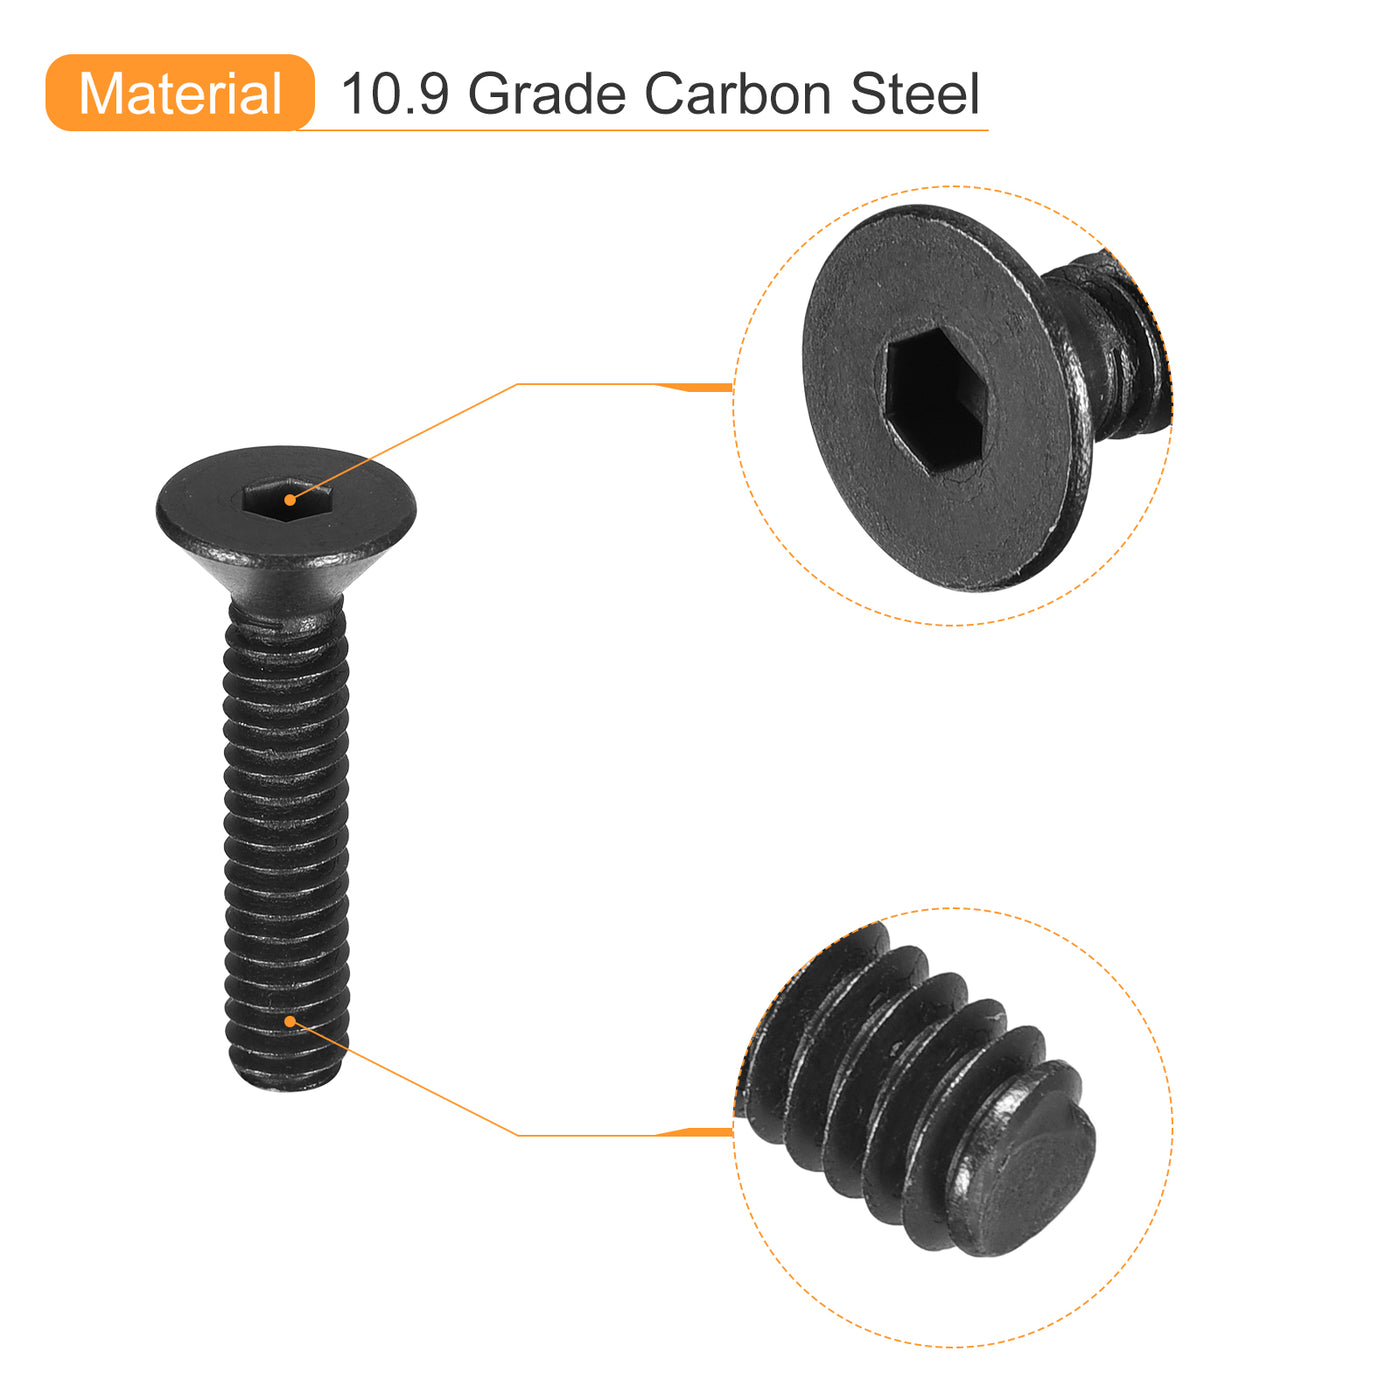 uxcell Uxcell #6-32x3/4" Flat Head Socket Cap Screws, 10.9 Grade Carbon, Black, 10pcs